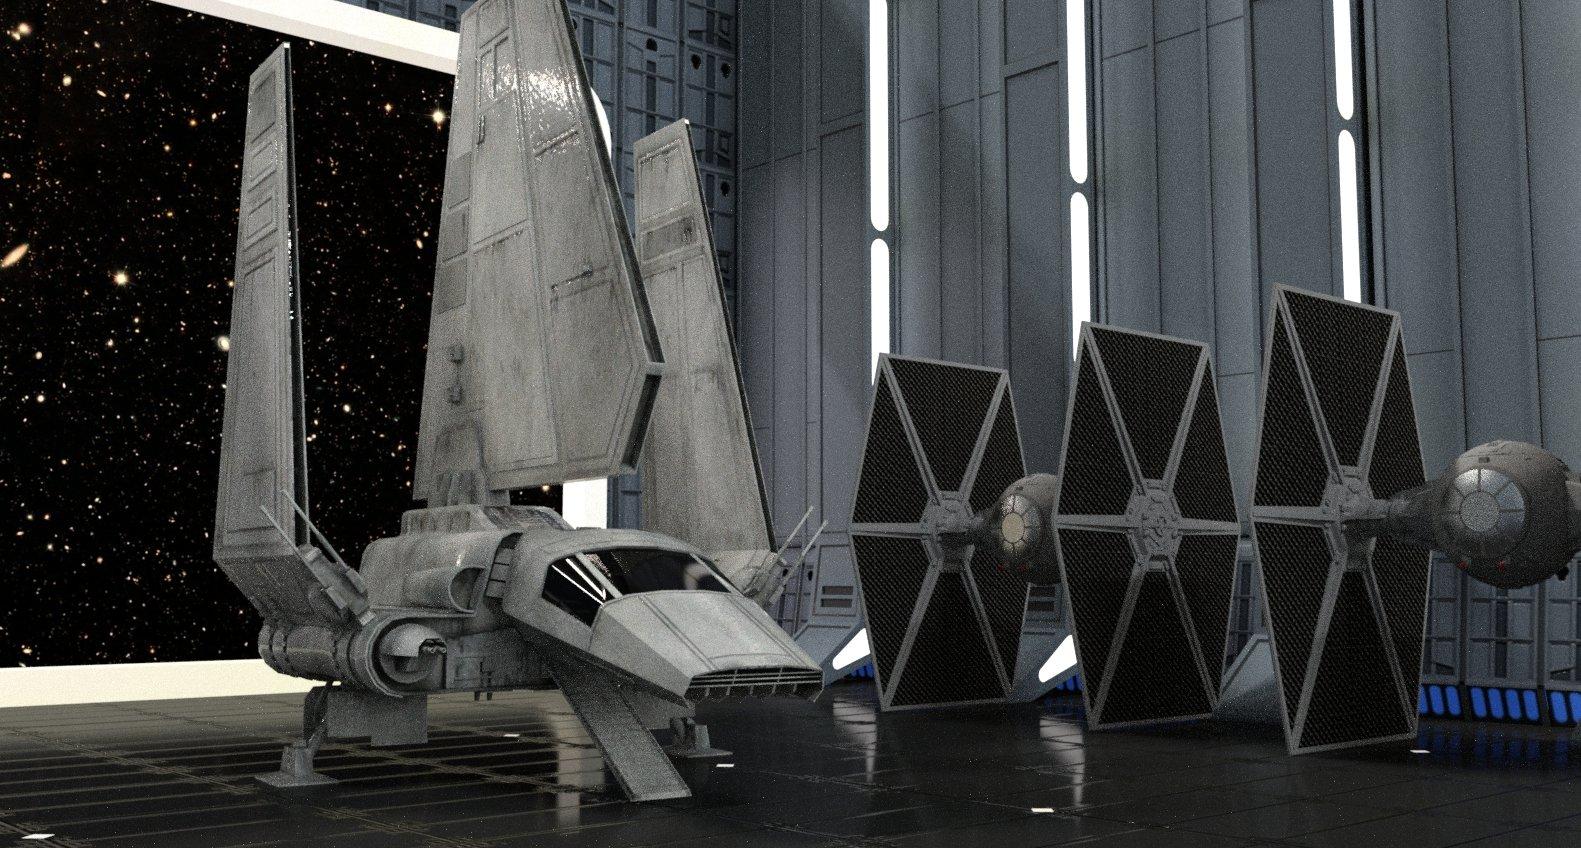 Star Wars Imperial Shuttle 3d Model By Dazinbane